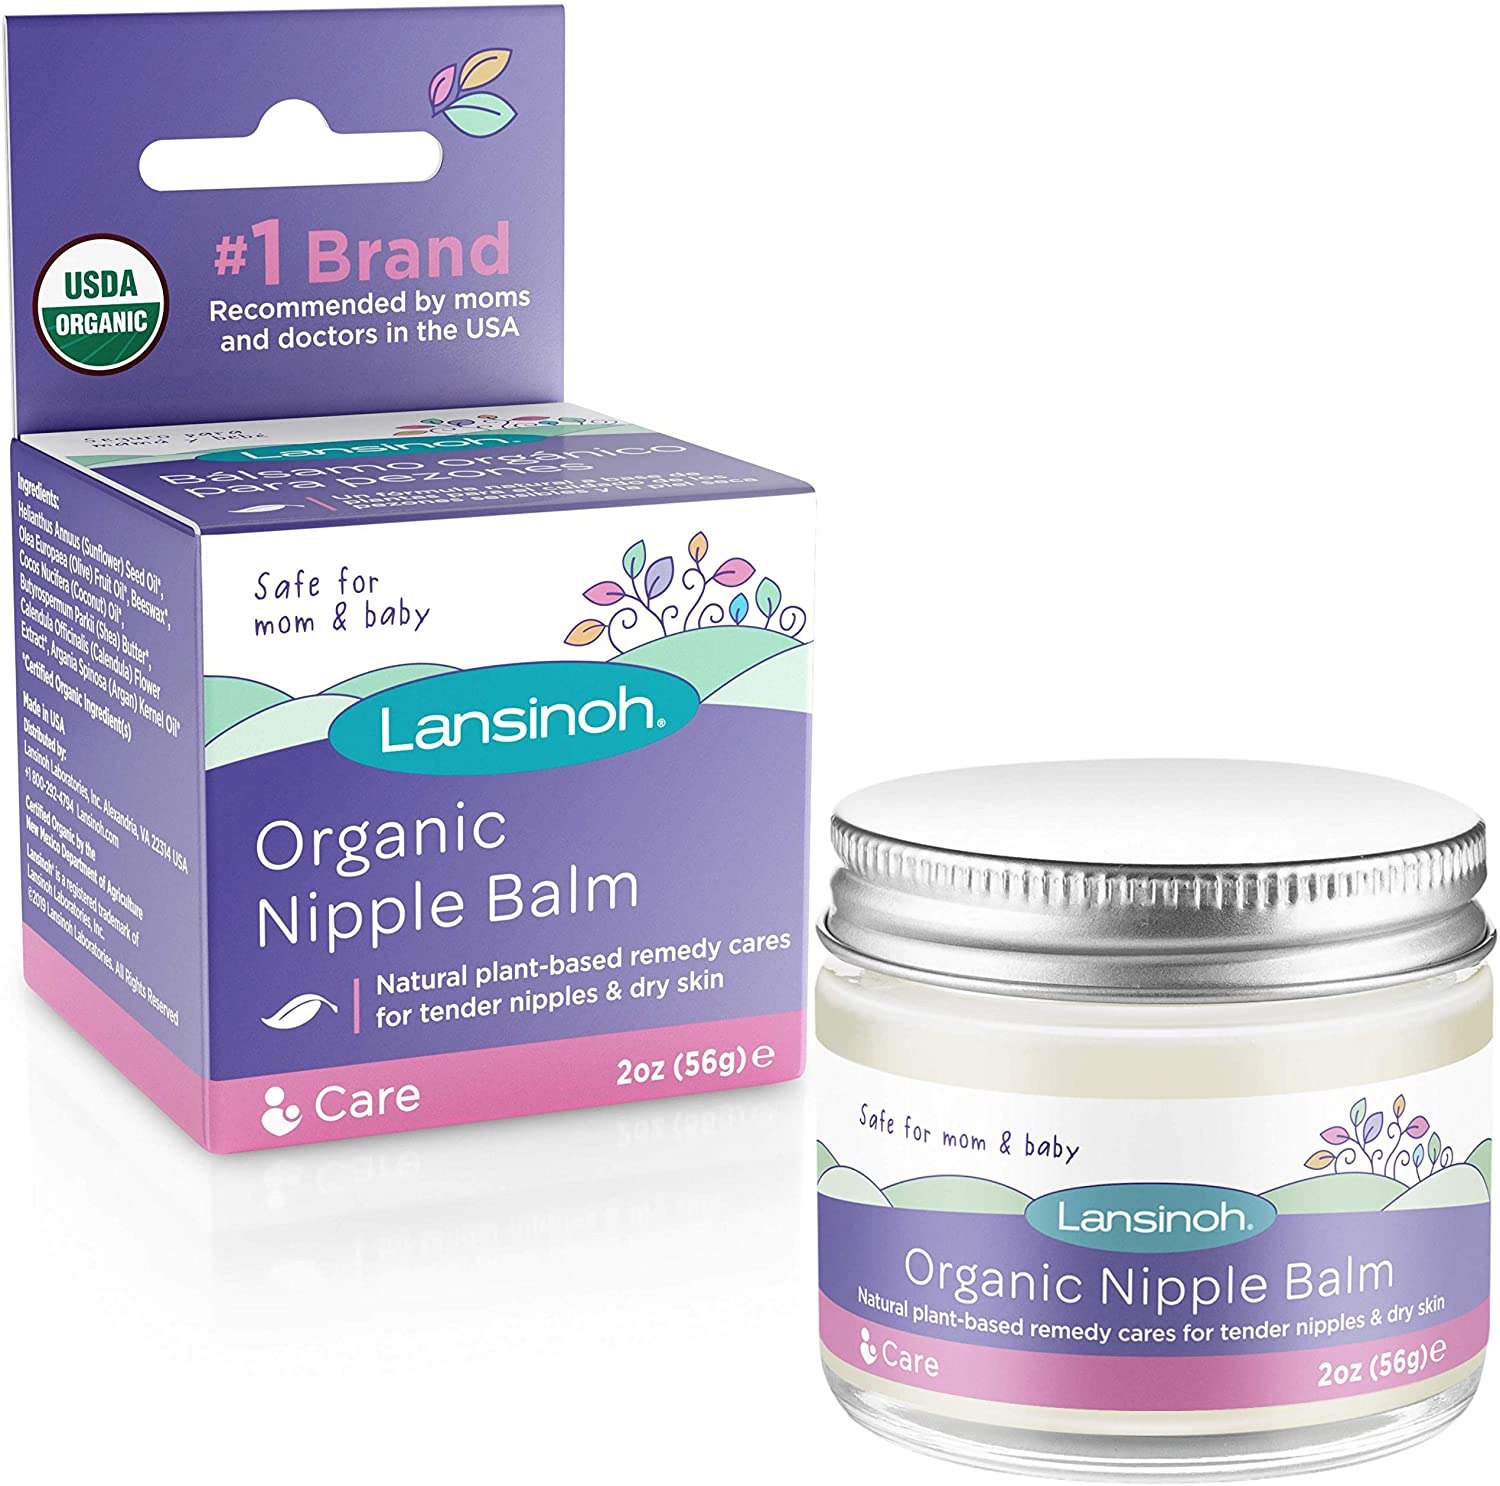 Lansinoh Organic Nipple Balm review